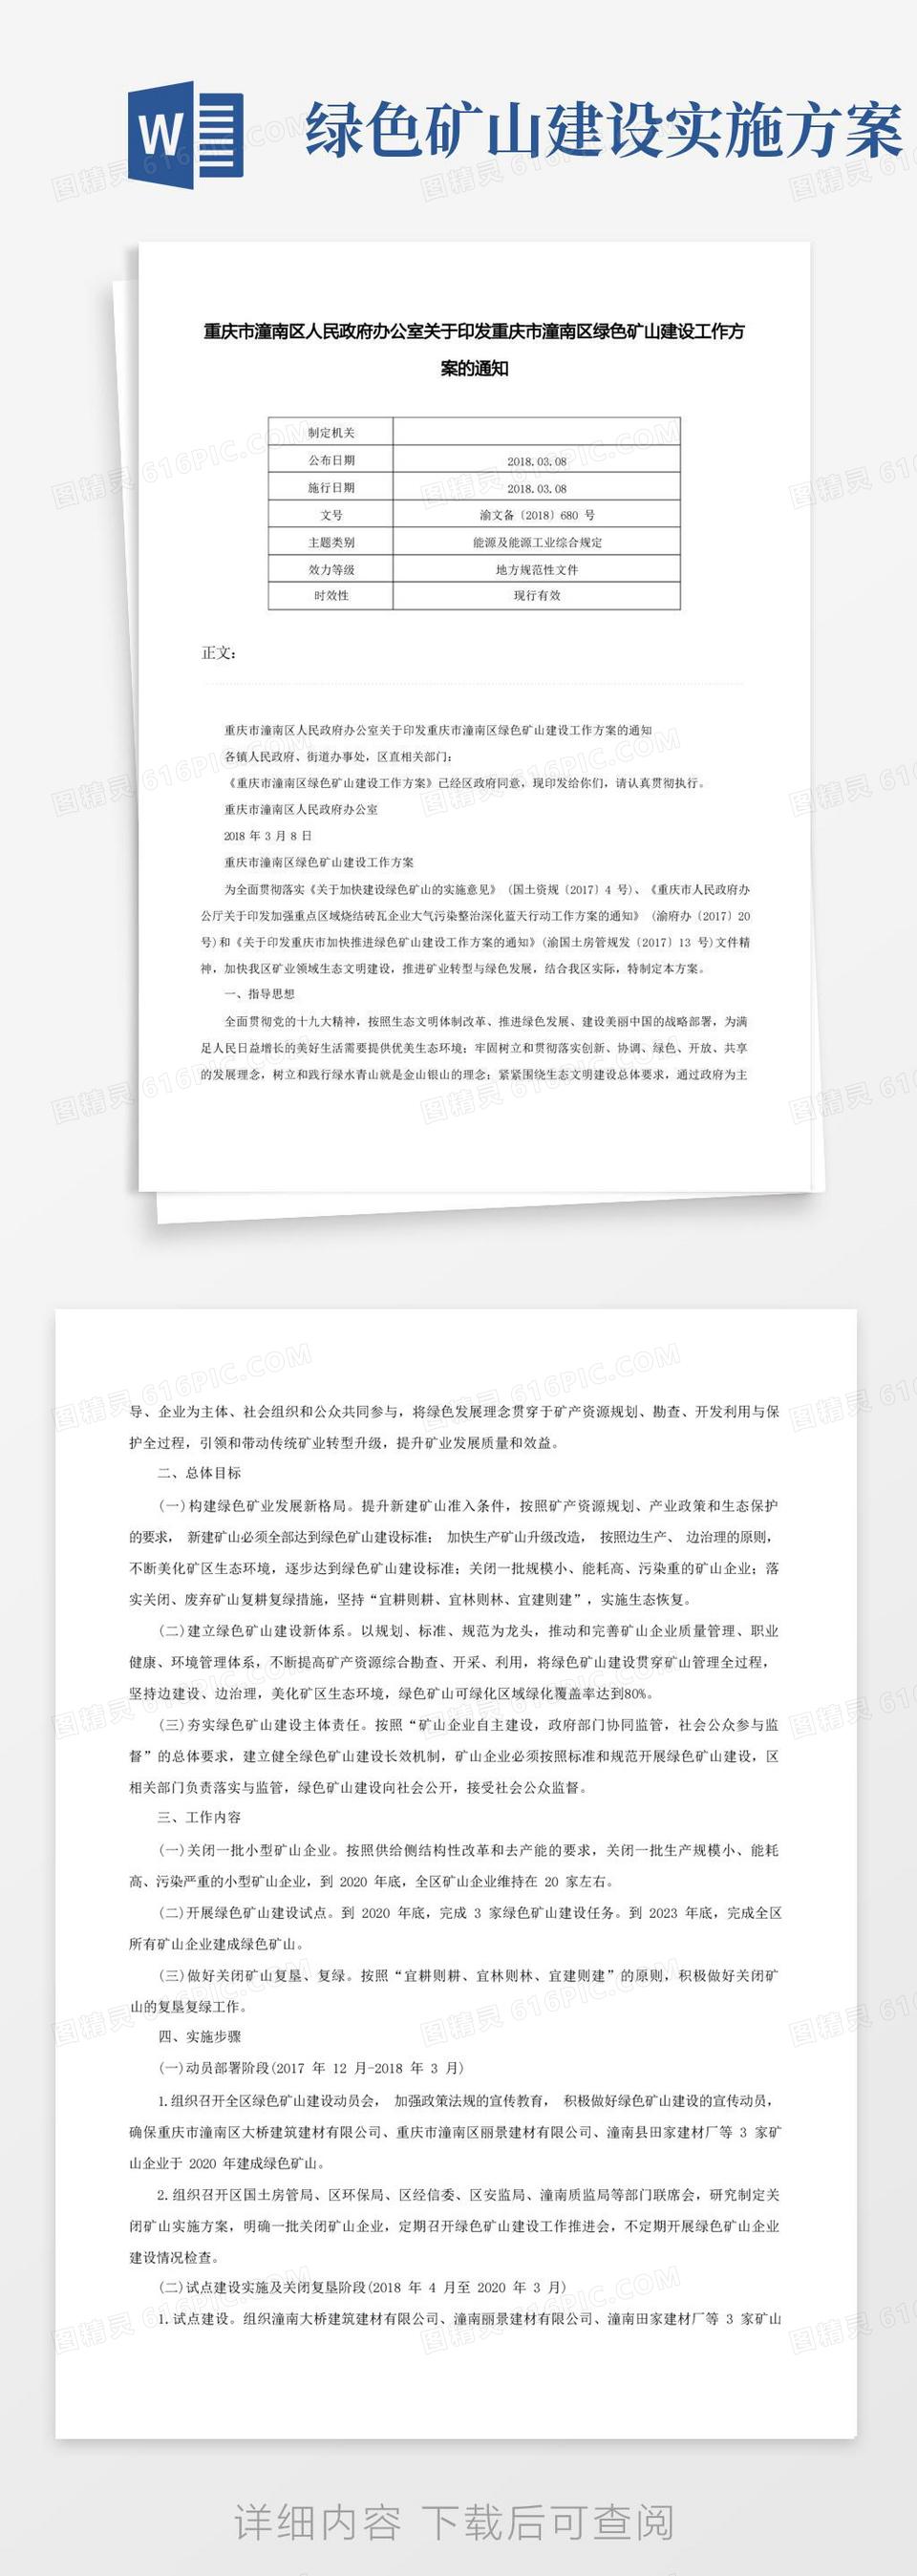 重庆市潼南区人民政府办公室关于印发重庆市潼南区绿色矿山建设工作方案的通知-渝文备〔〕680号